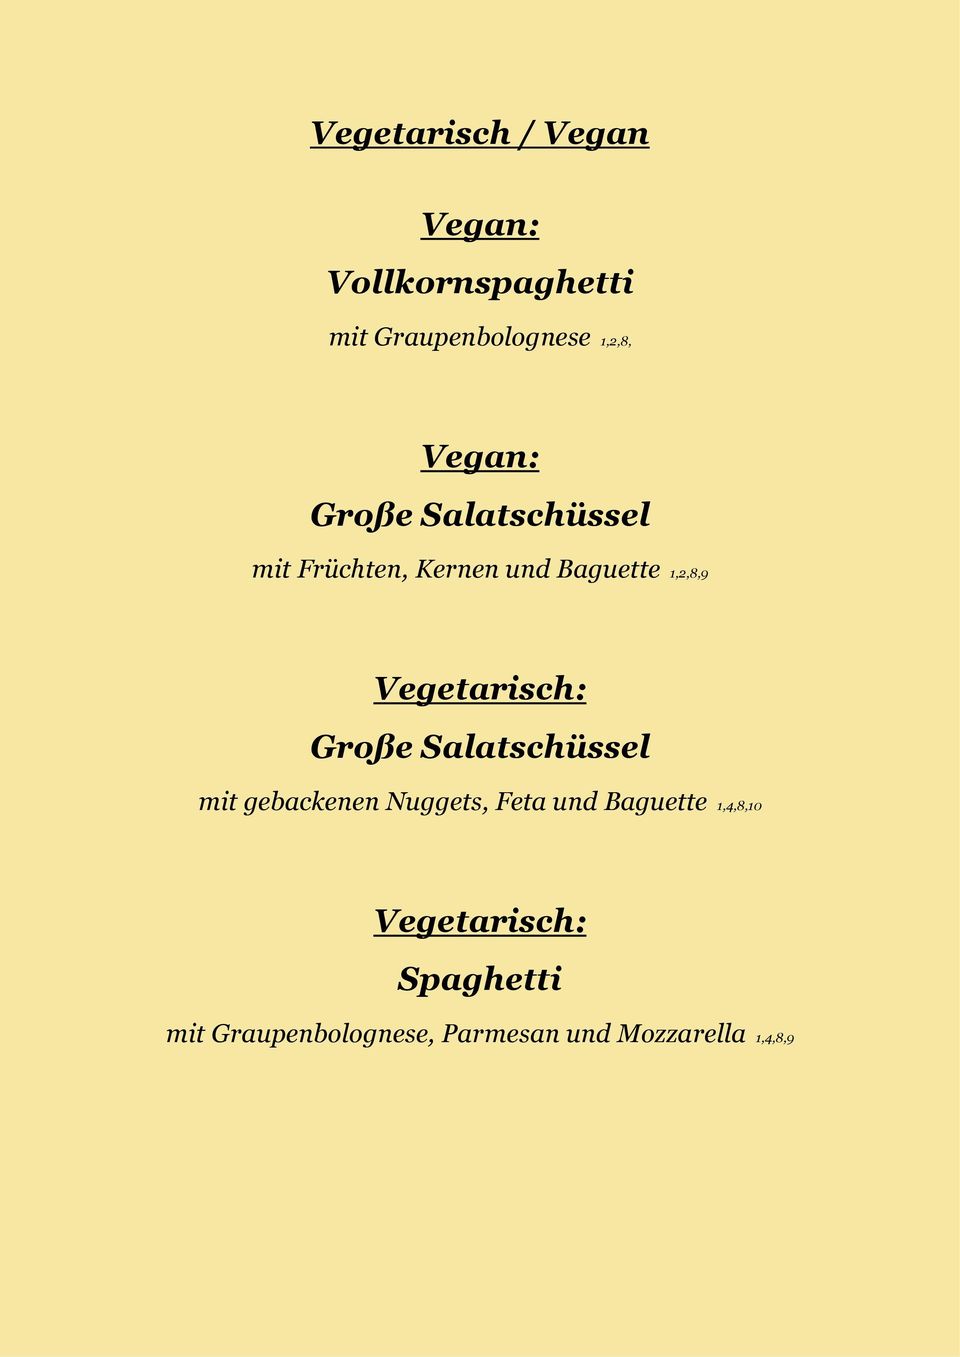 Vegetarisch: Große Salatschüssel mit gebackenen Nuggets, Feta und Baguette